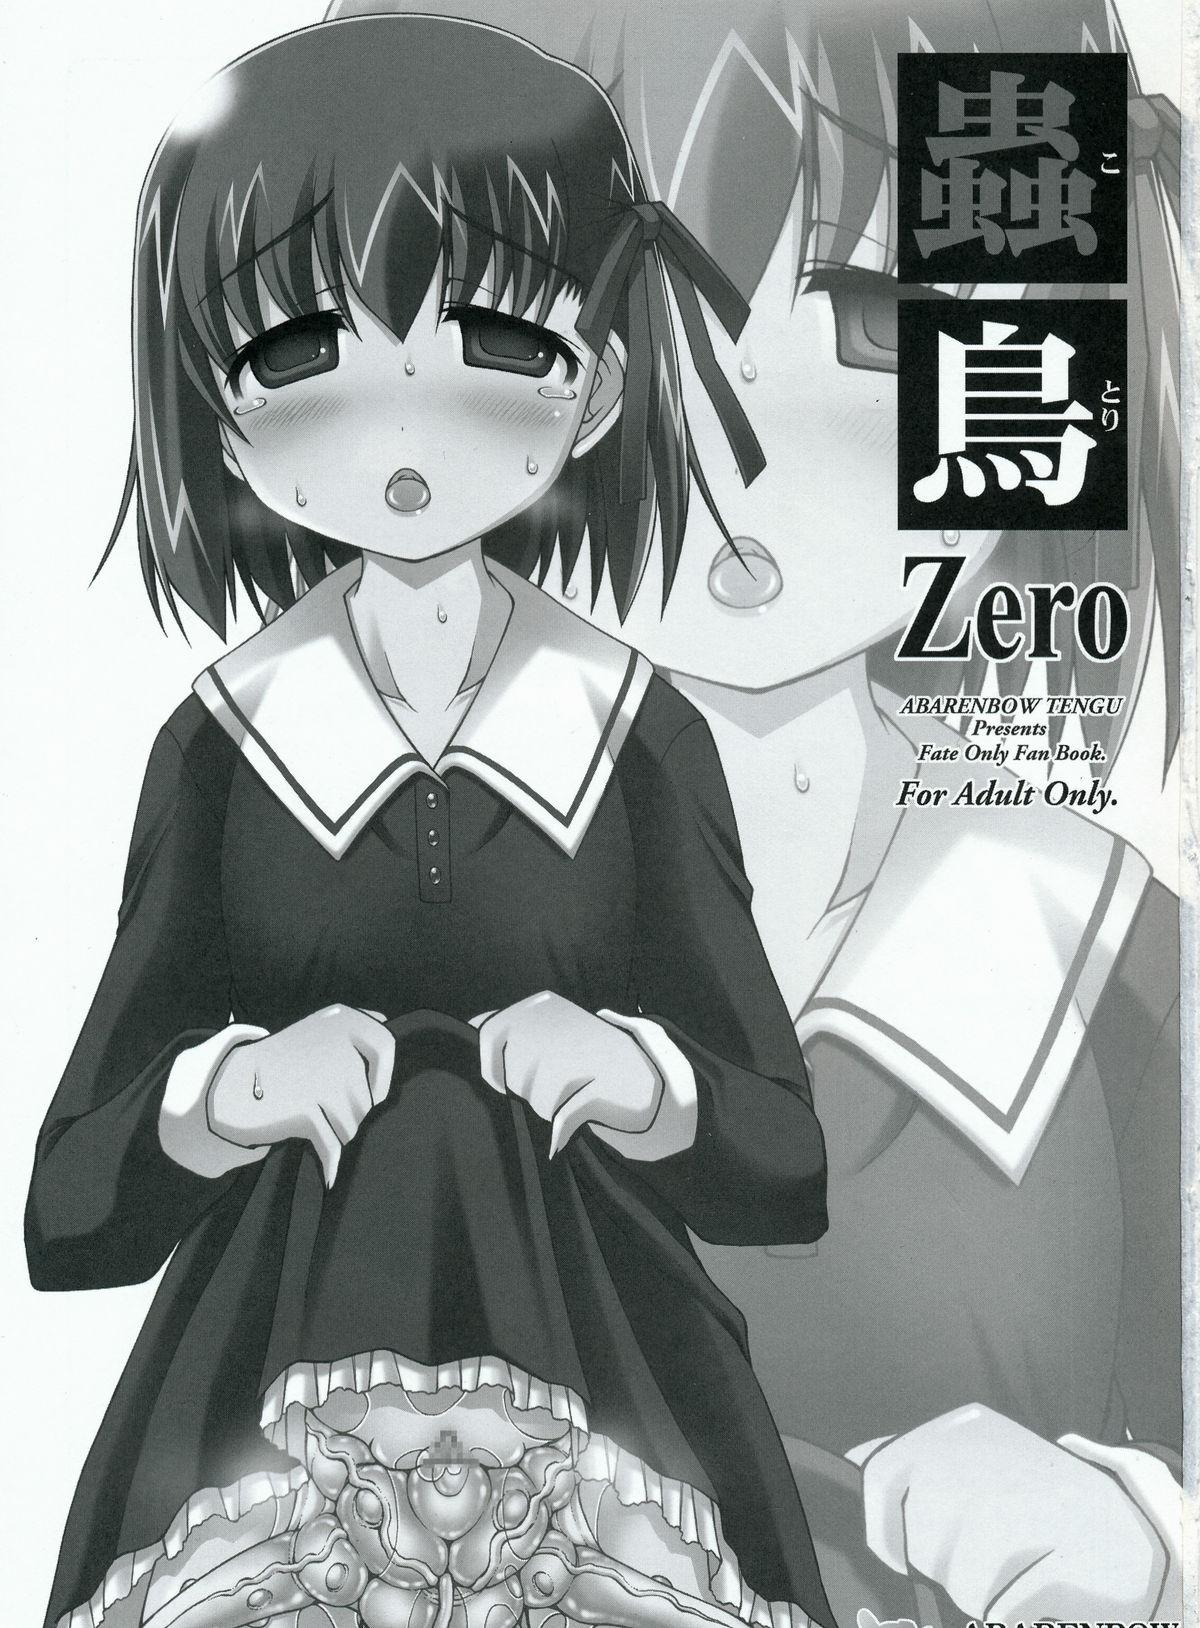 Perfect Body Kotori Zero - Fate zero Vietnamese - Page 2